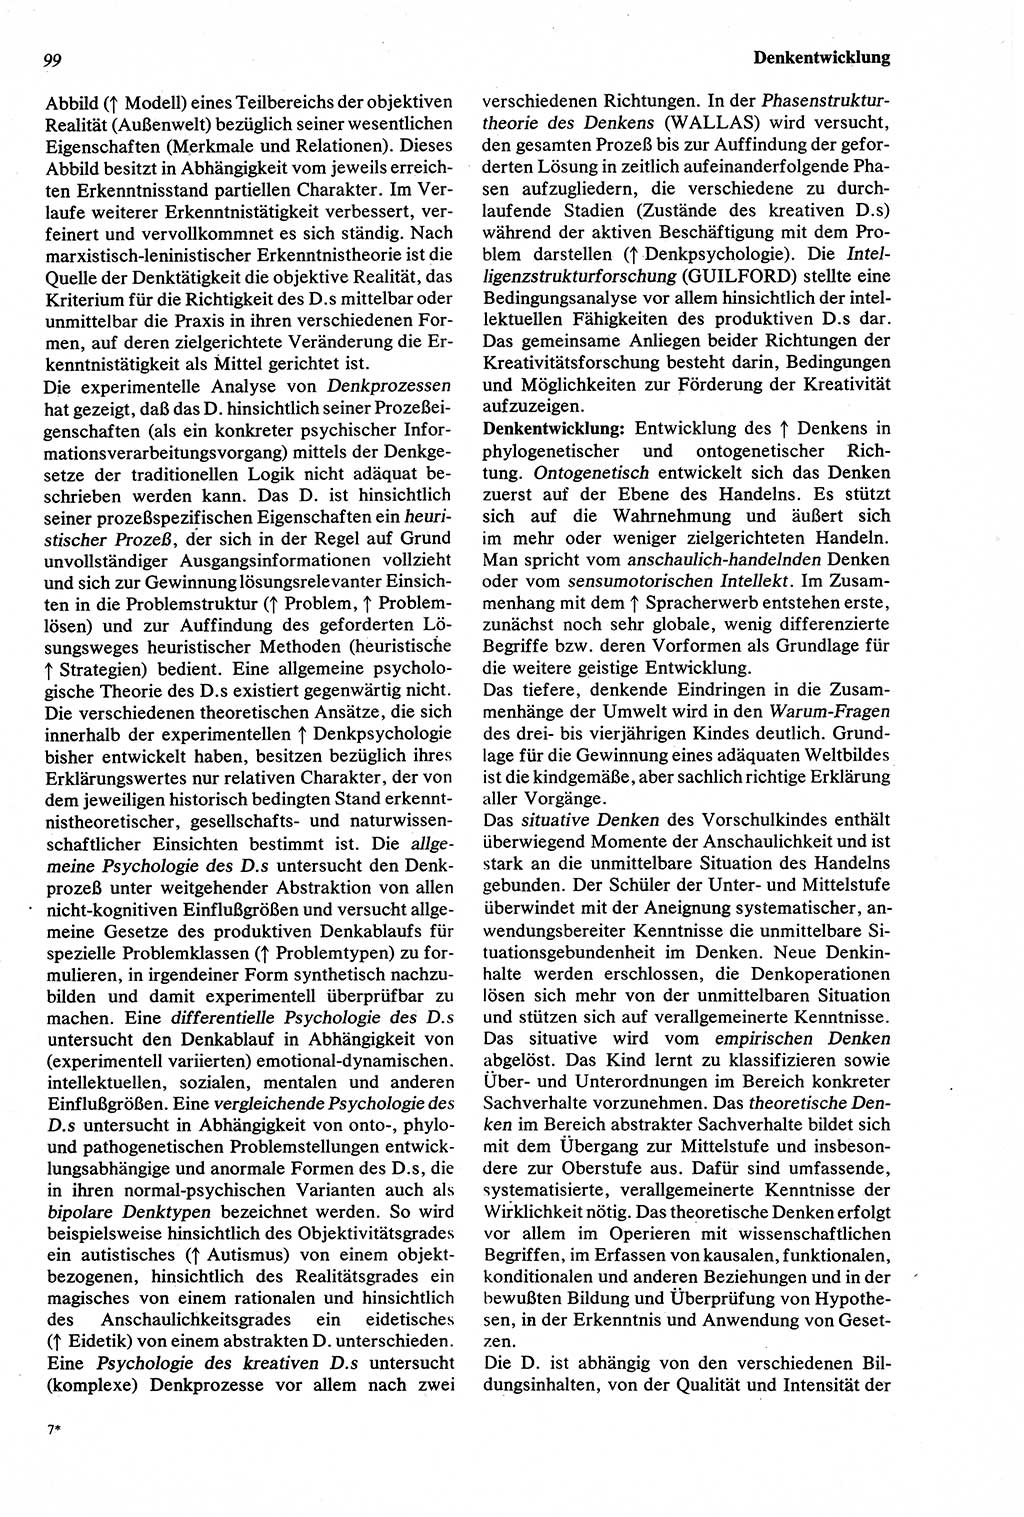 Wörterbuch der Psychologie [Deutsche Demokratische Republik (DDR)] 1976, Seite 99 (Wb. Psych. DDR 1976, S. 99)